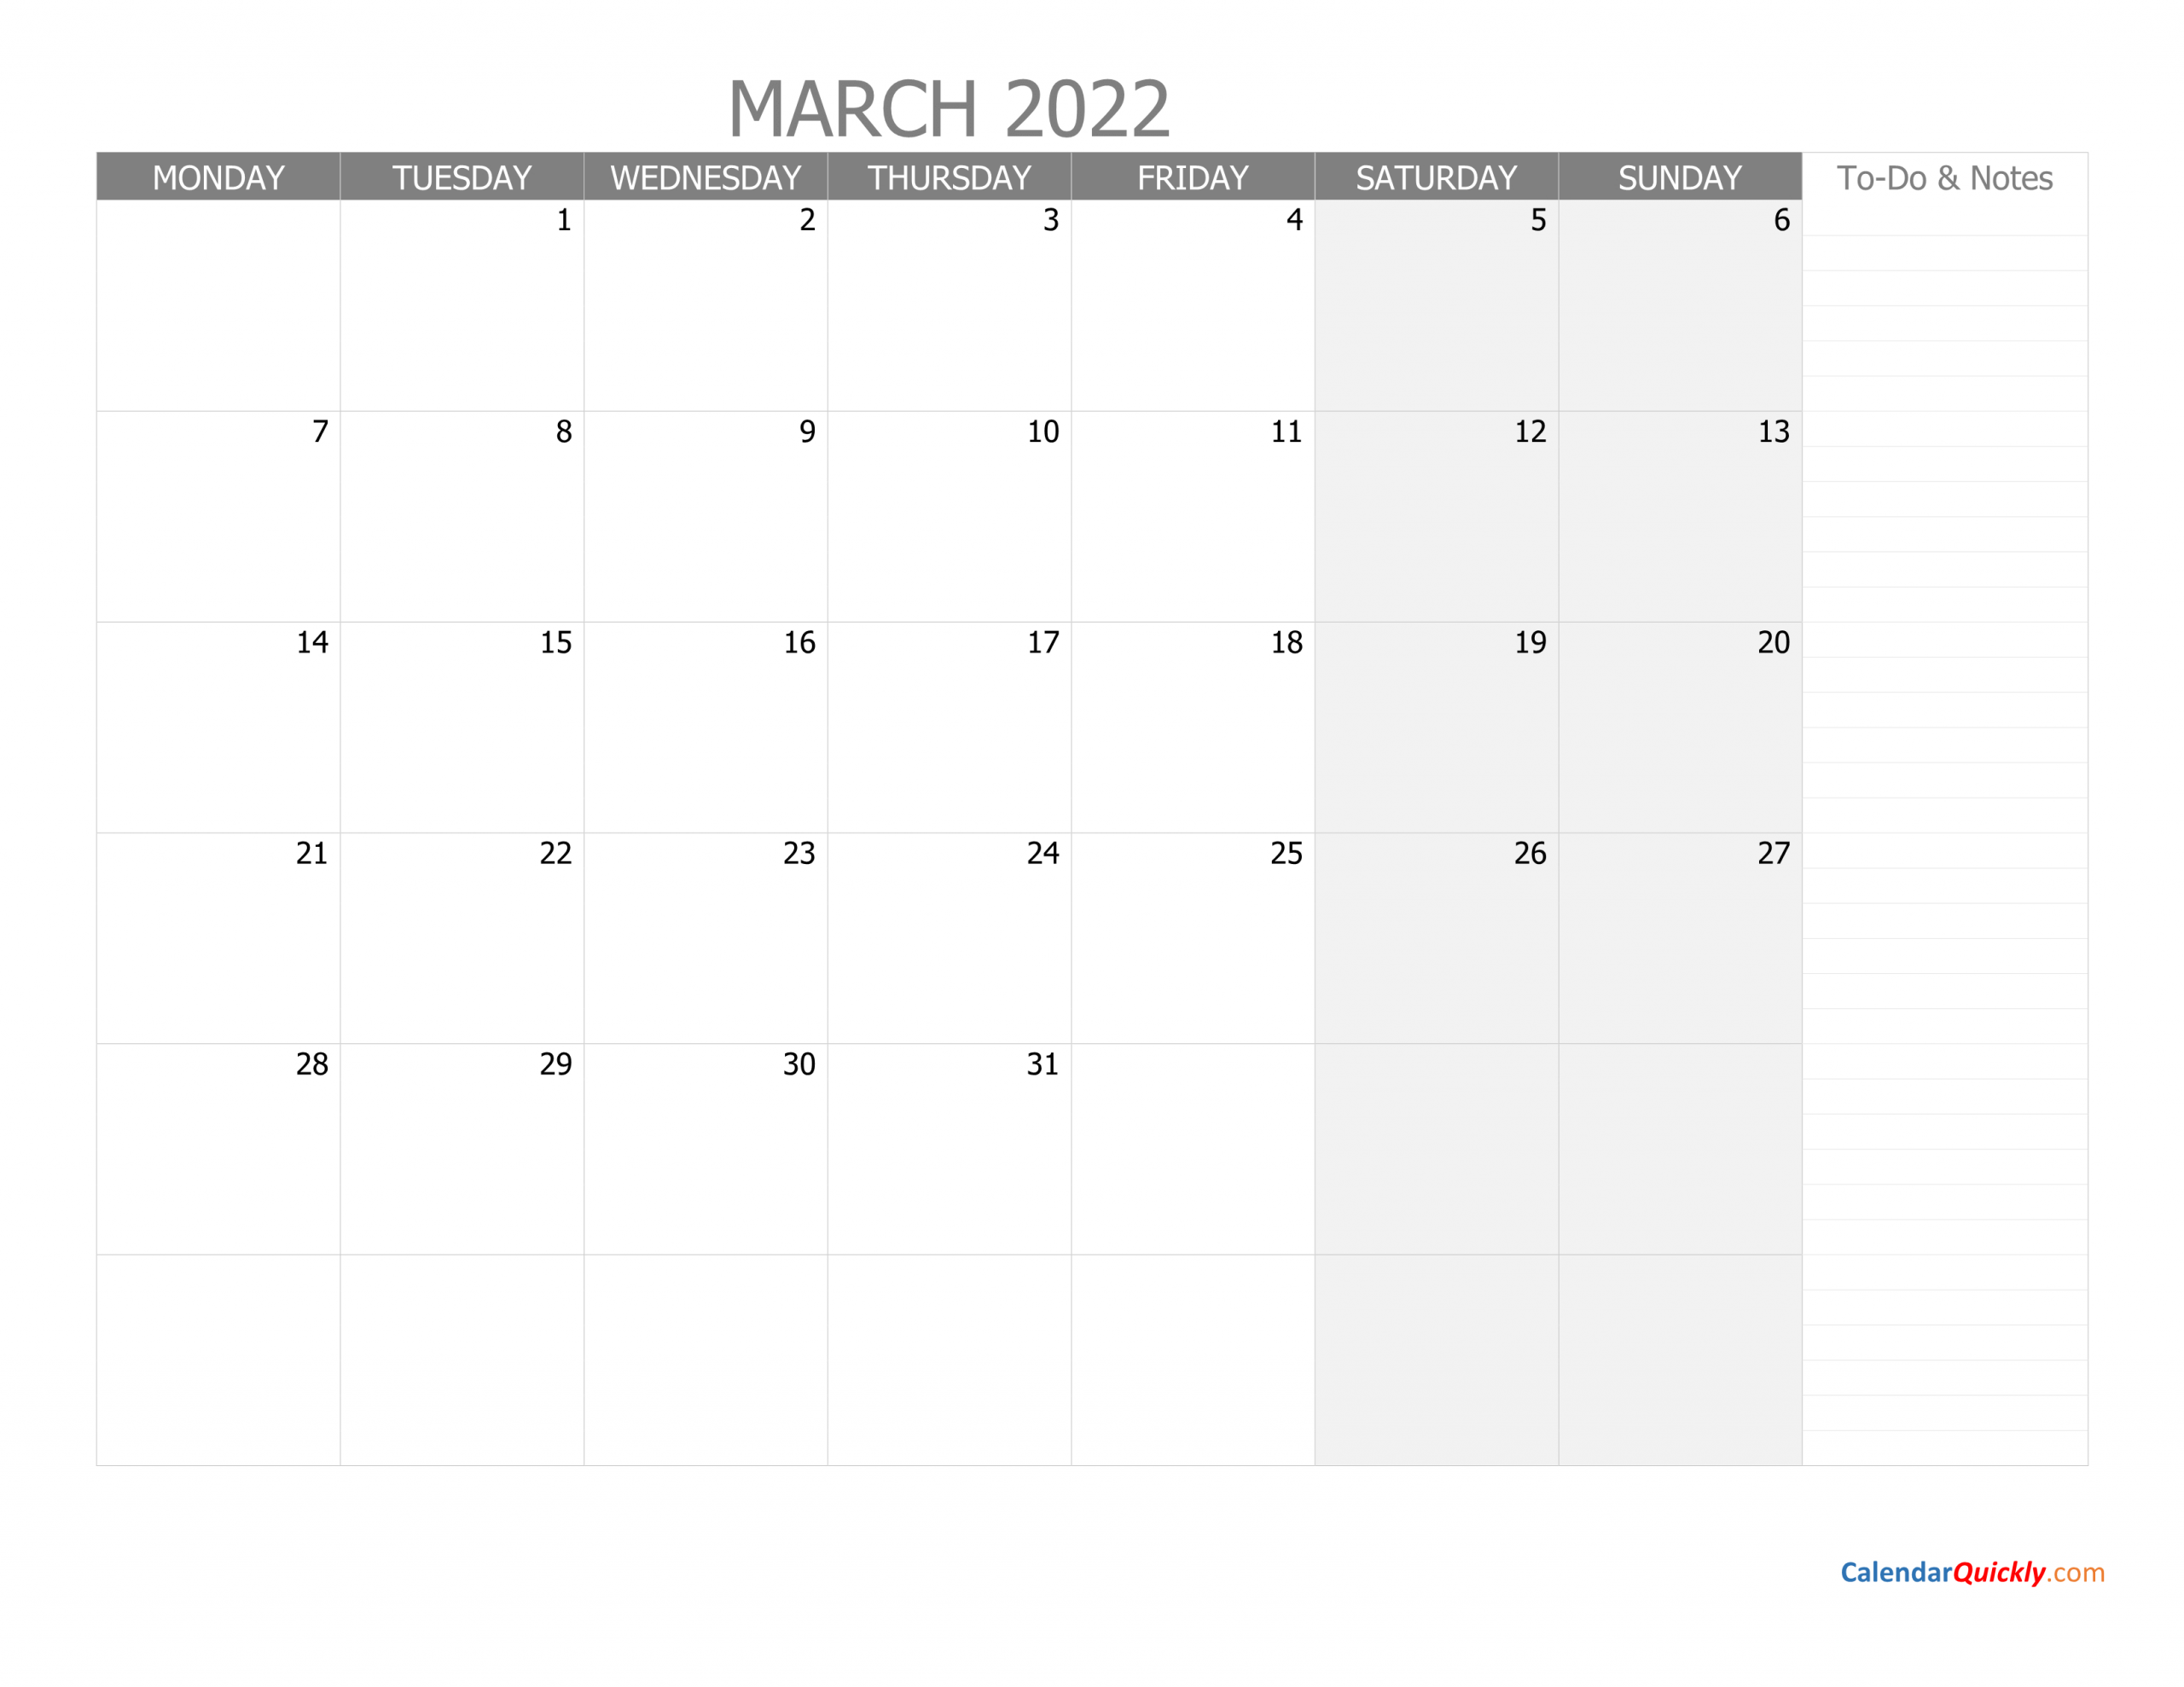 March Monday Calendar 2022 With Notes | Calendar Quickly